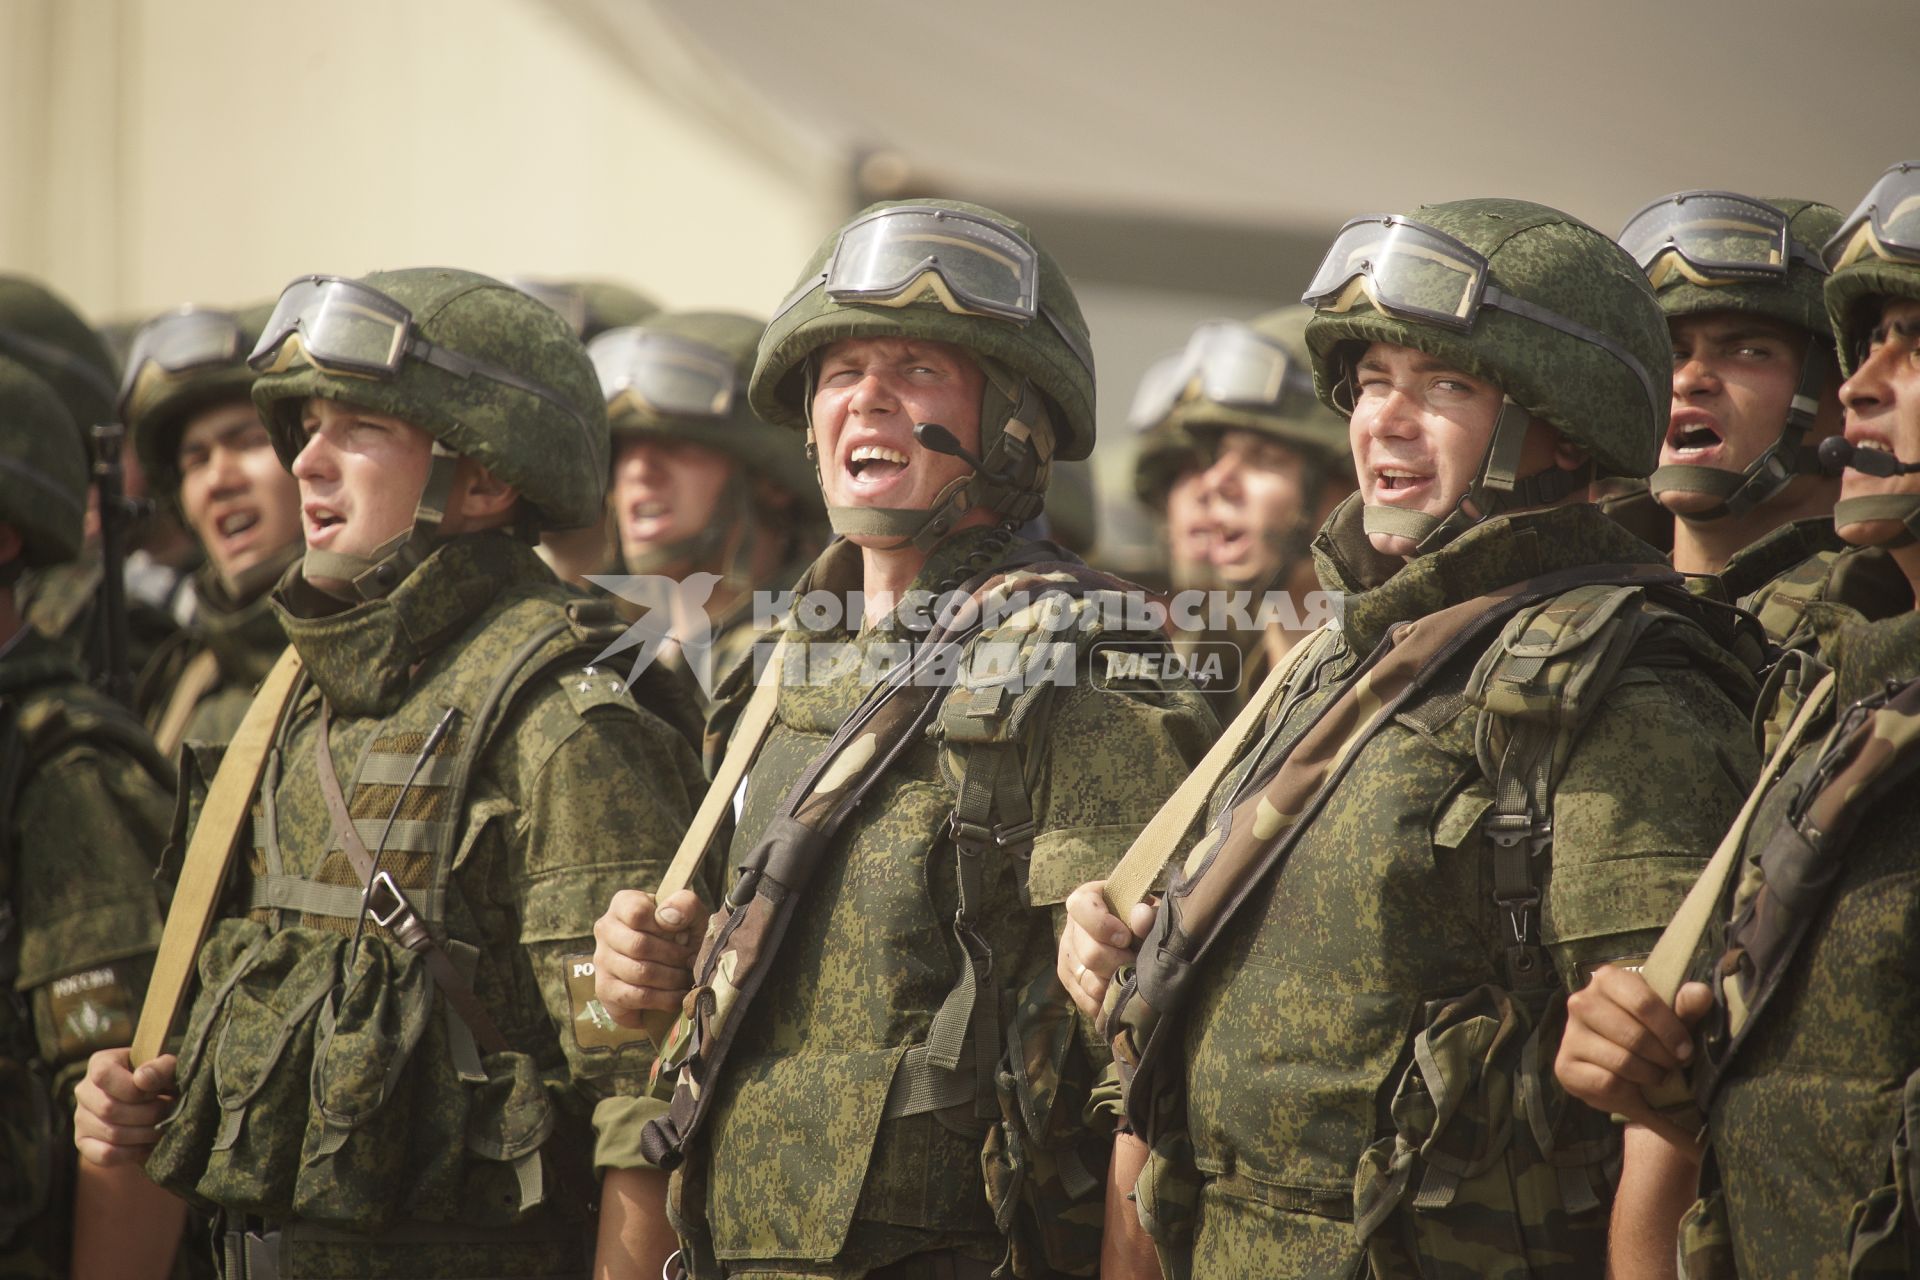 Российские солдаты приветствуют командующего в строю  во время проведения Российско-Китайских учений Мирная миссия 2013 на полигоне в Чебаркуле